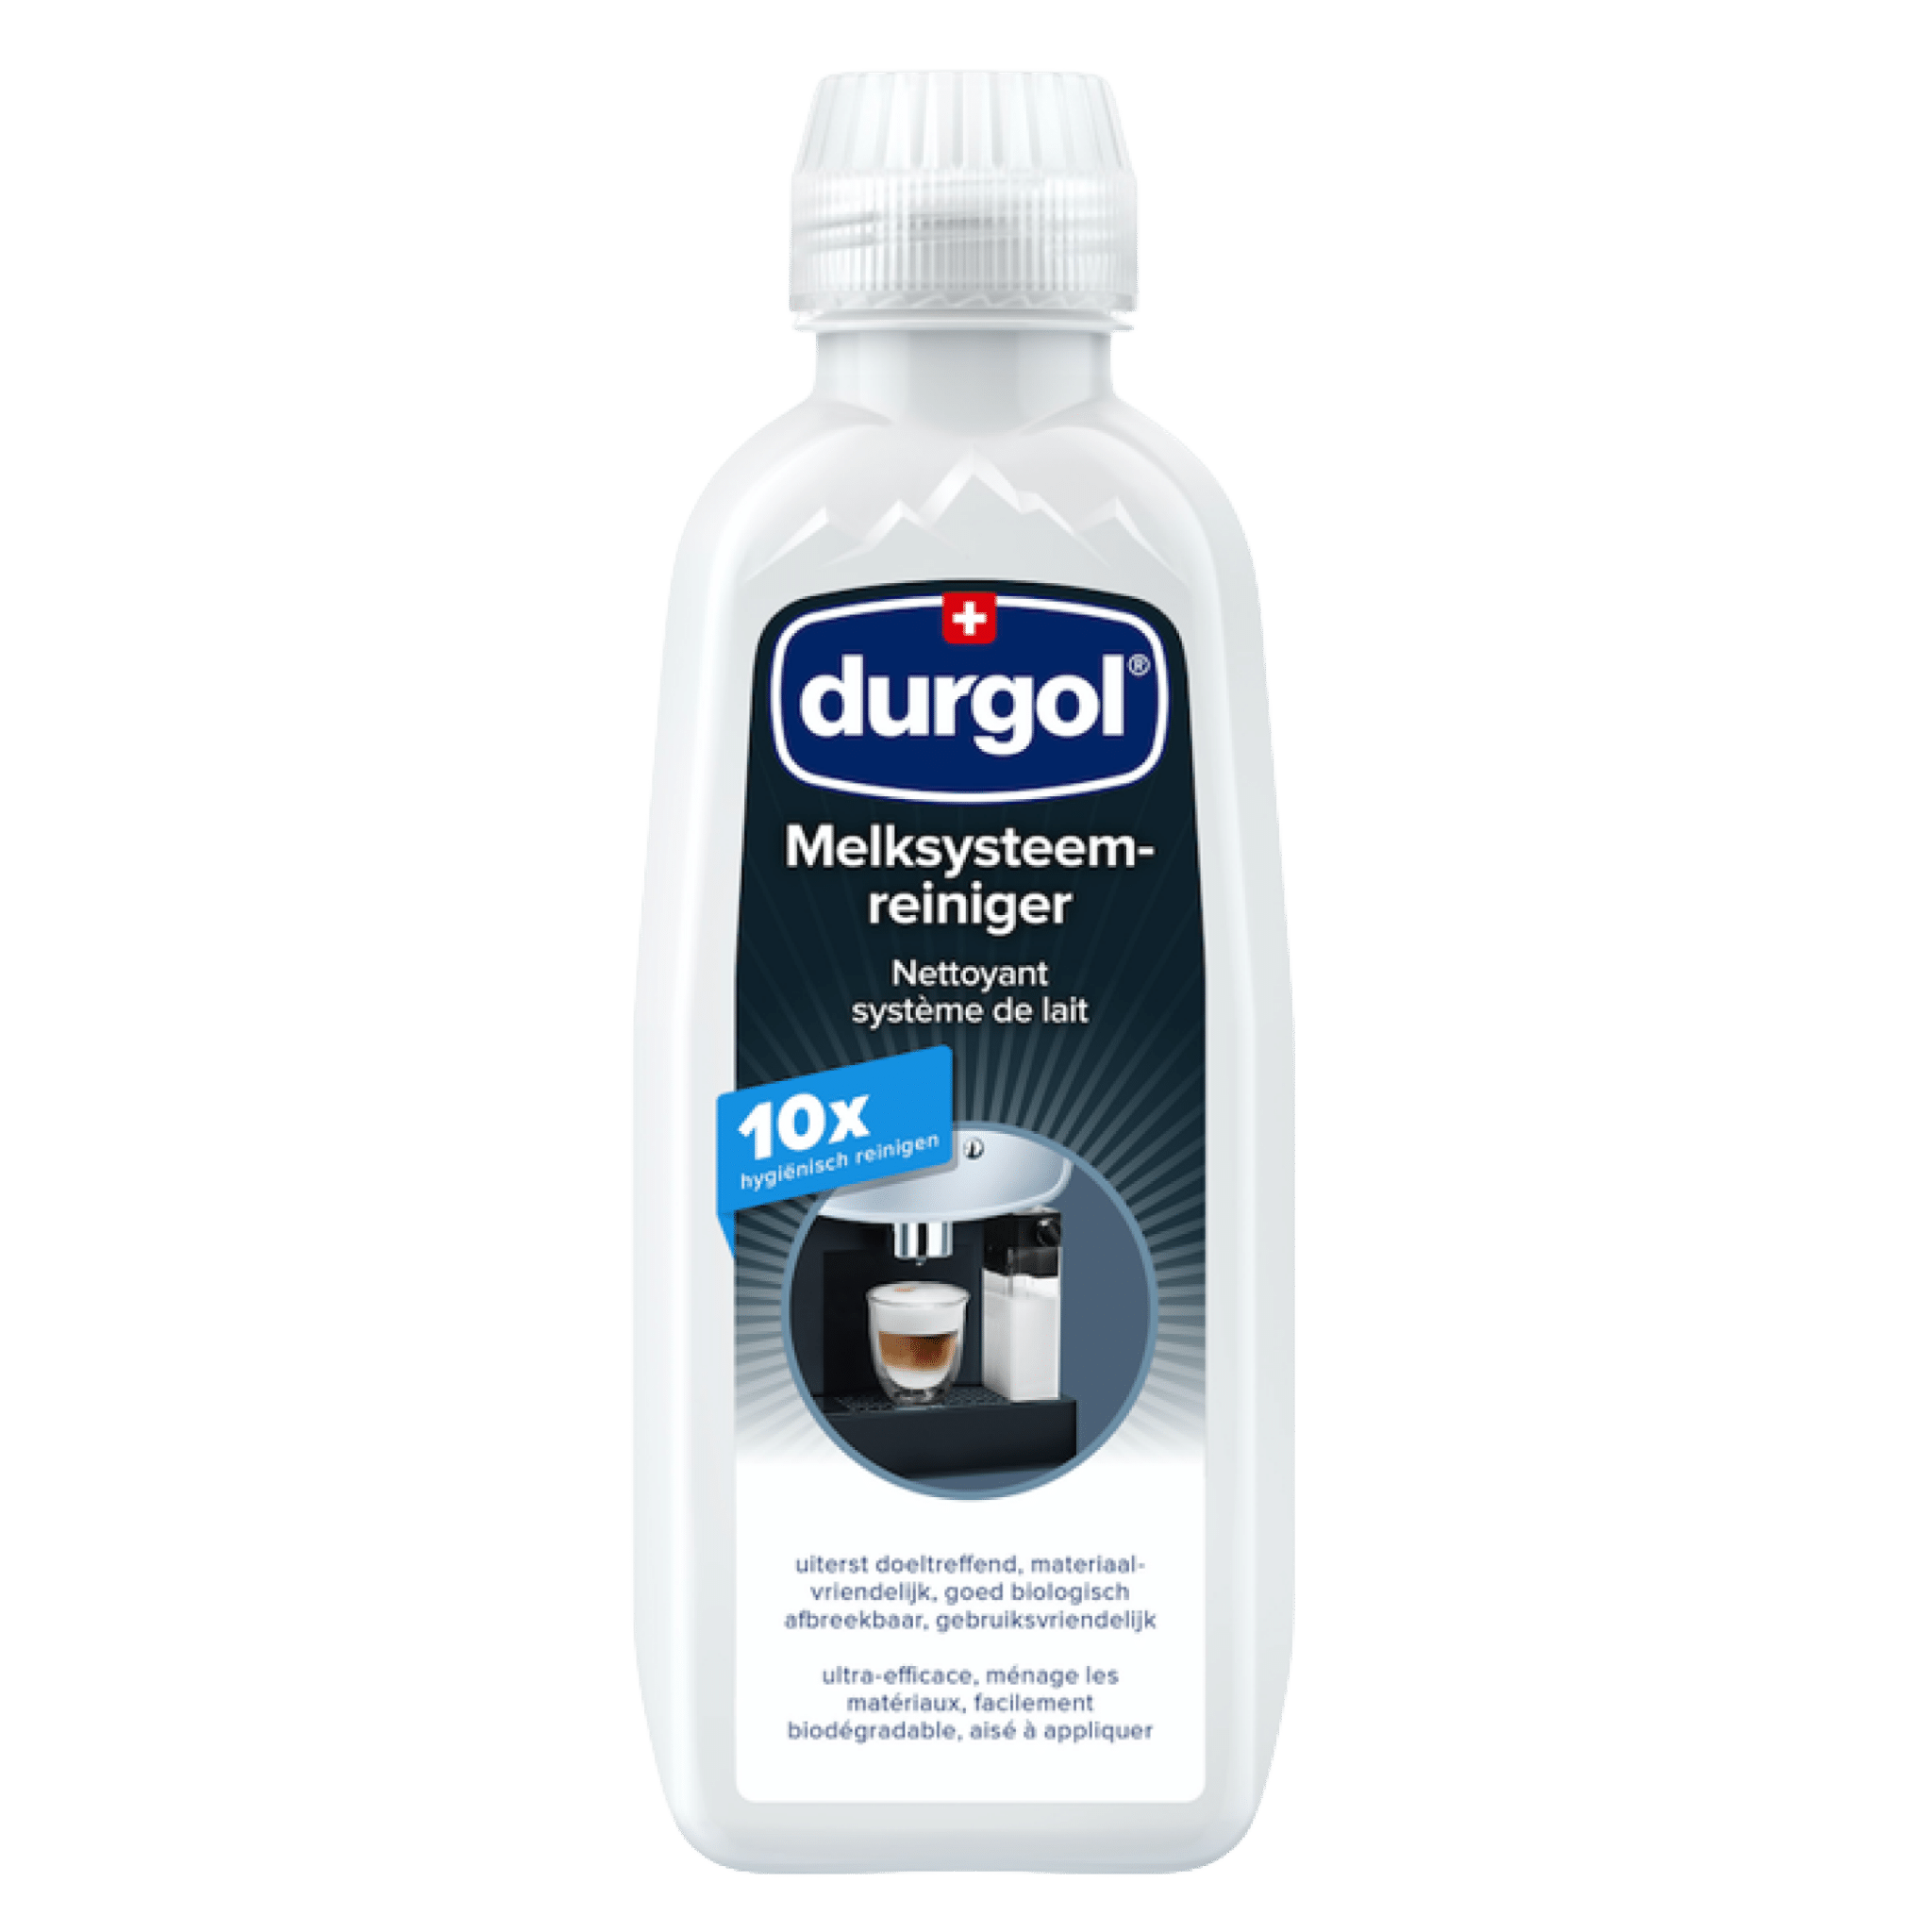 Durgol melksysteemreiniger 500ml